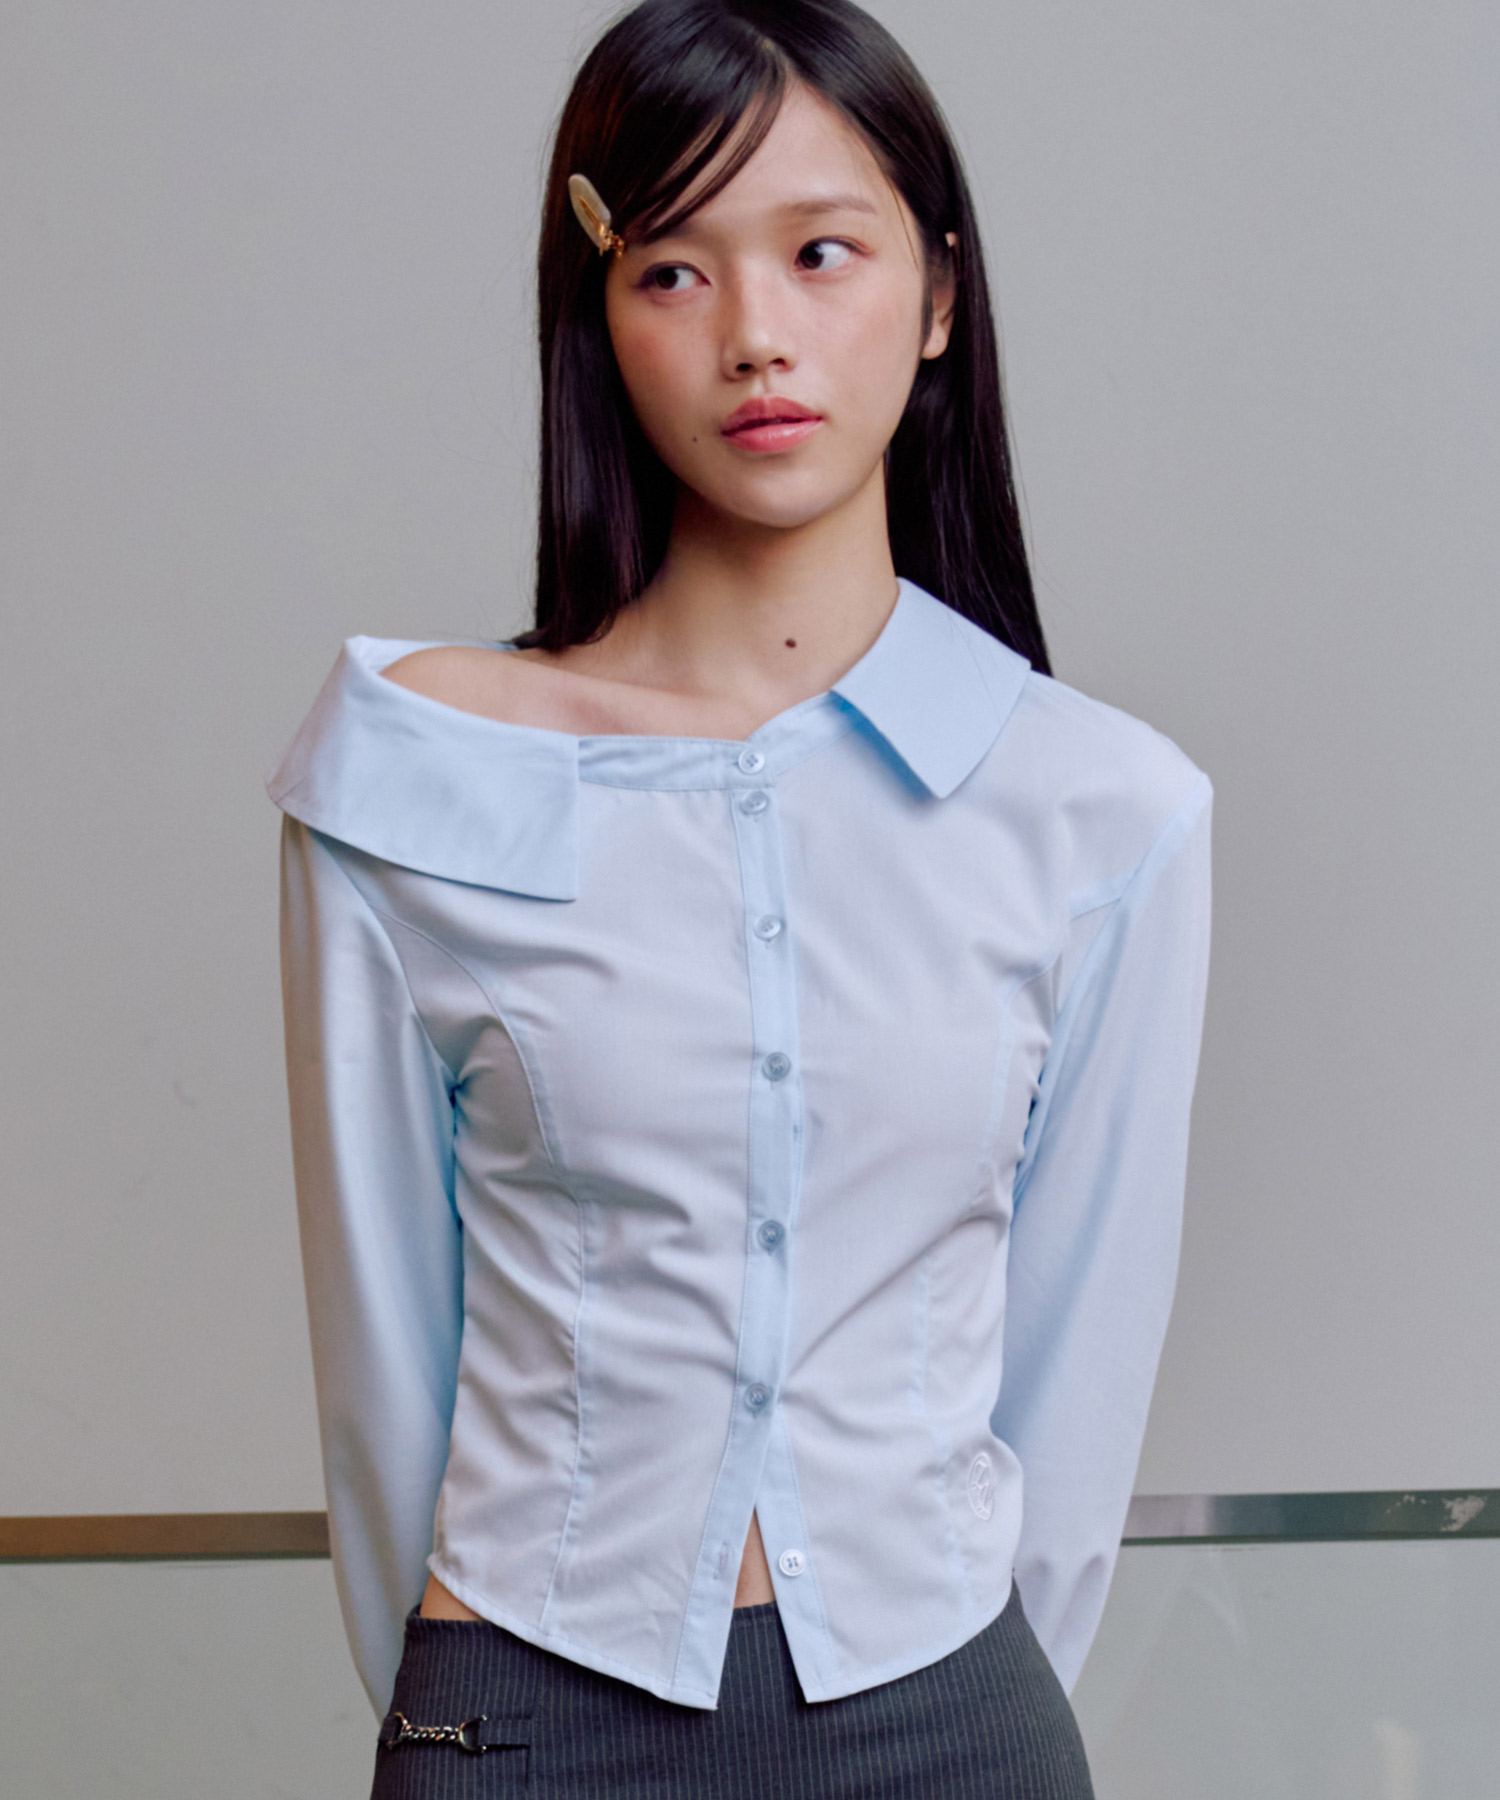 예약 배송 04월 18일_버니 오프숄더 셔츠 [BLUE] 김나영이 착용한 제로플래닛